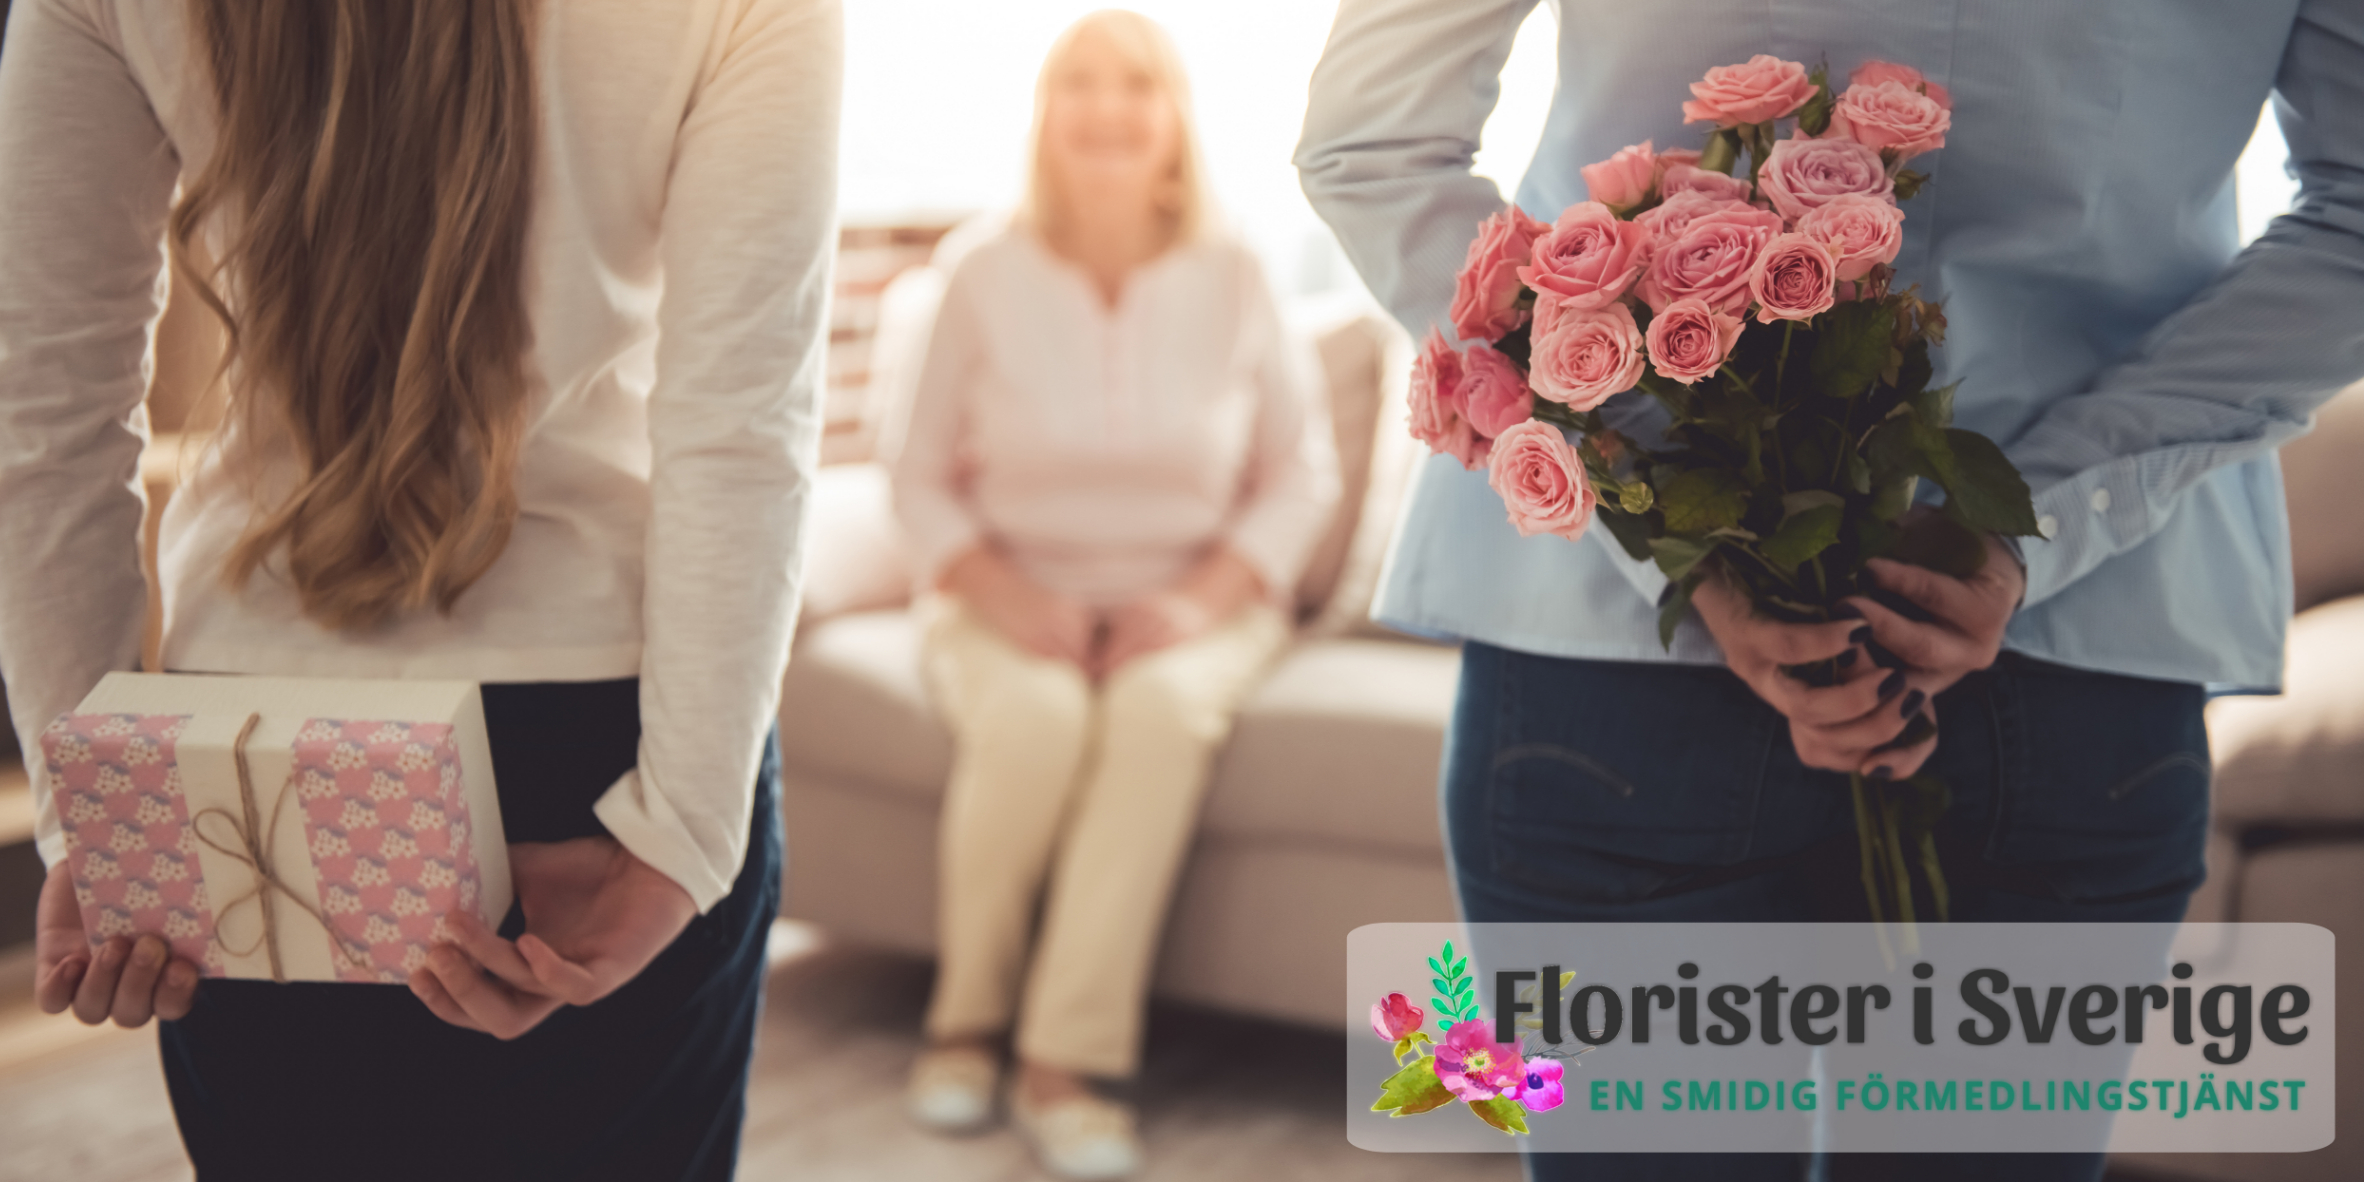 Låt floristen fritt få skapa din blomstergåva! Ett alternativ hos Florister i Sverige.